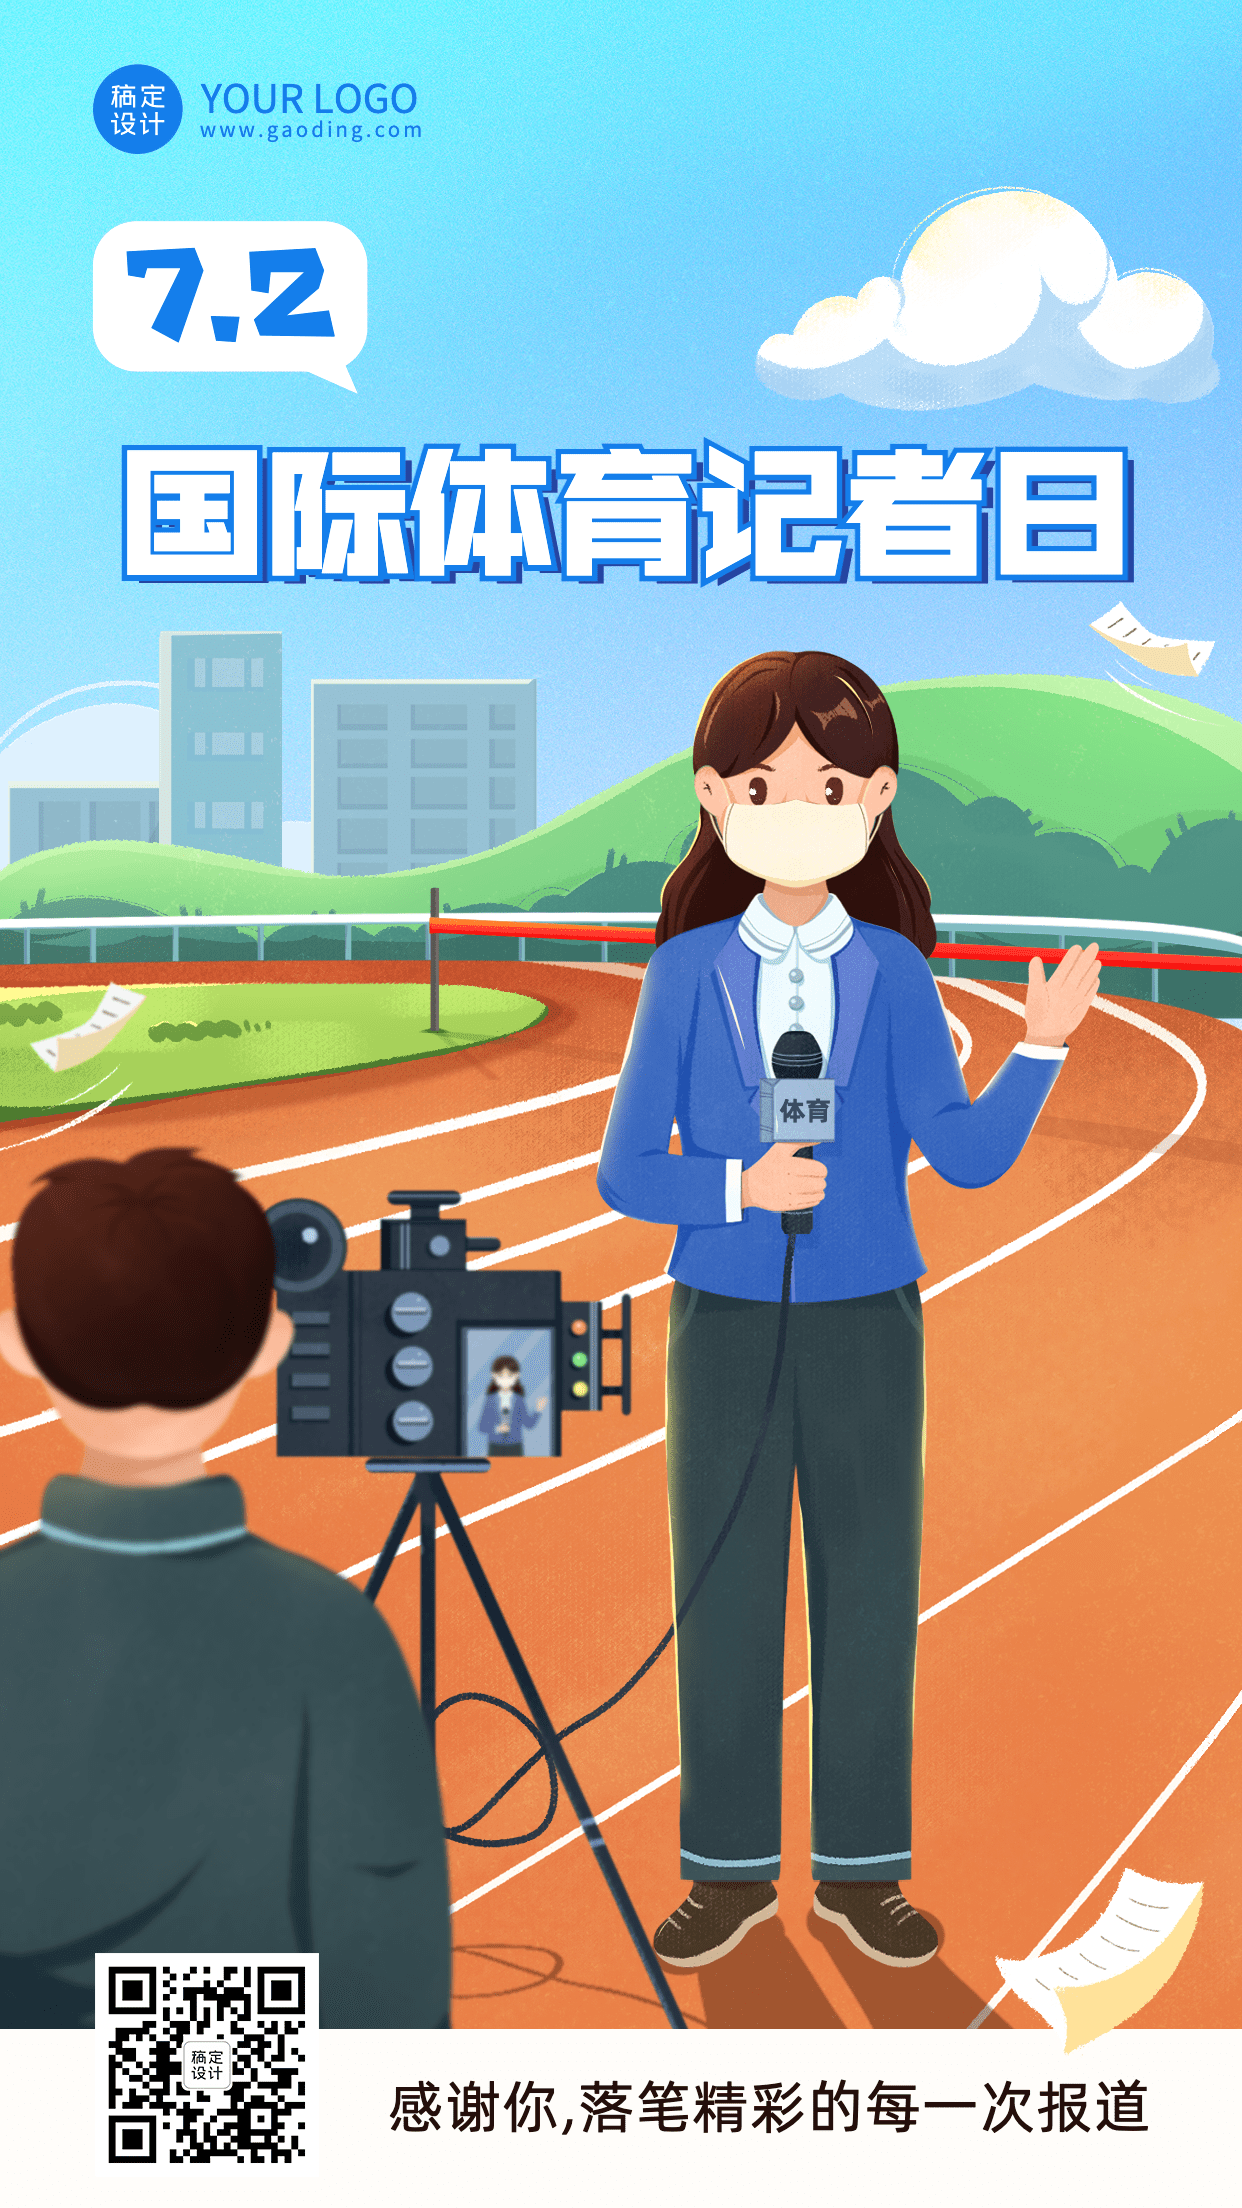 国际体育记者日节日宣传插画手机海报